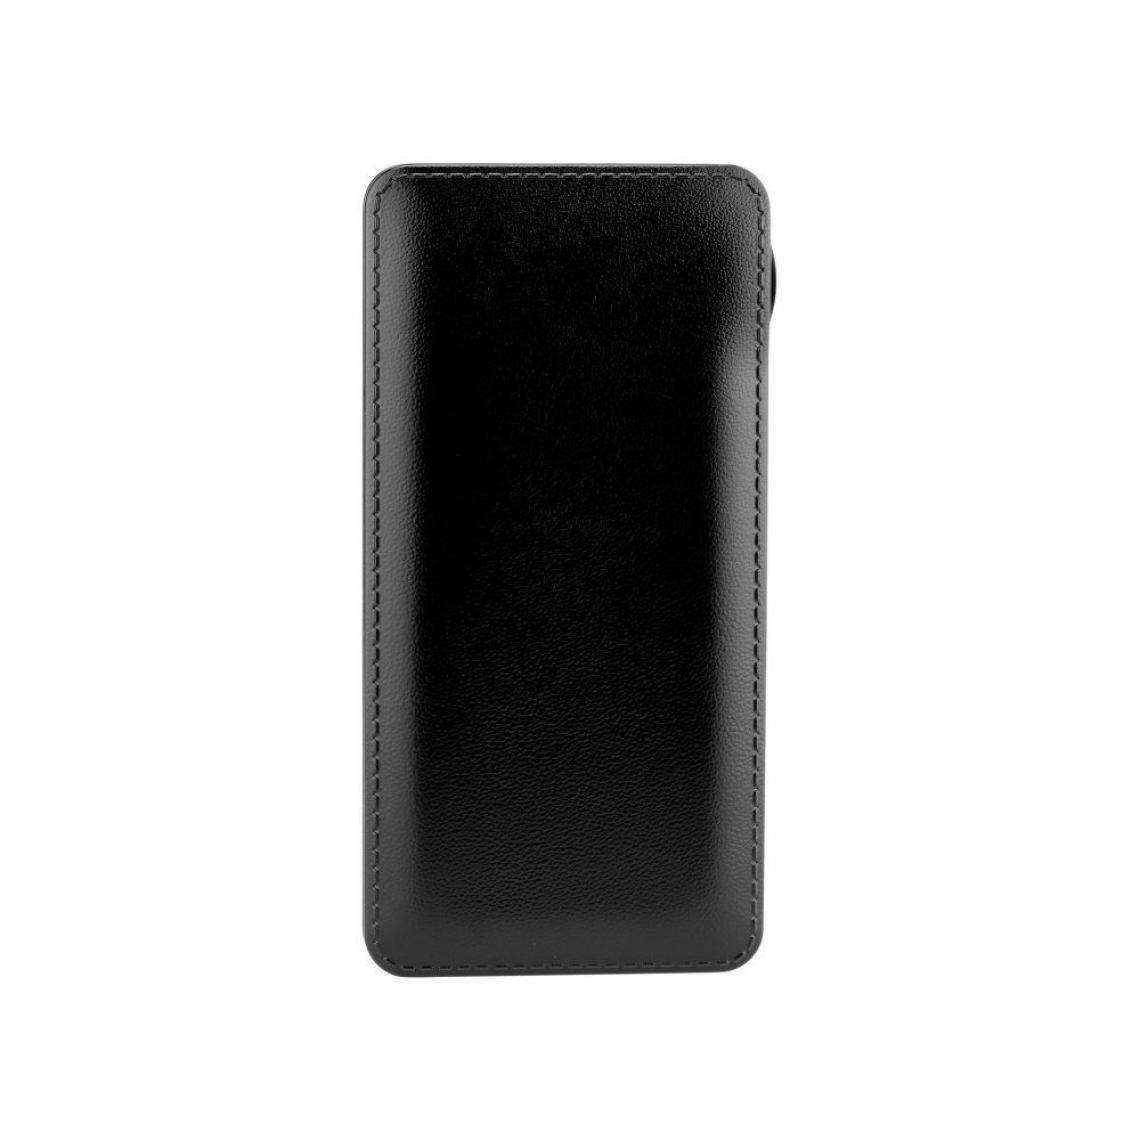 Ozzzo - Chargeur batterie externe 10000mAh powerbank ozzzo noir pour Amigoo X18 - Autres accessoires smartphone